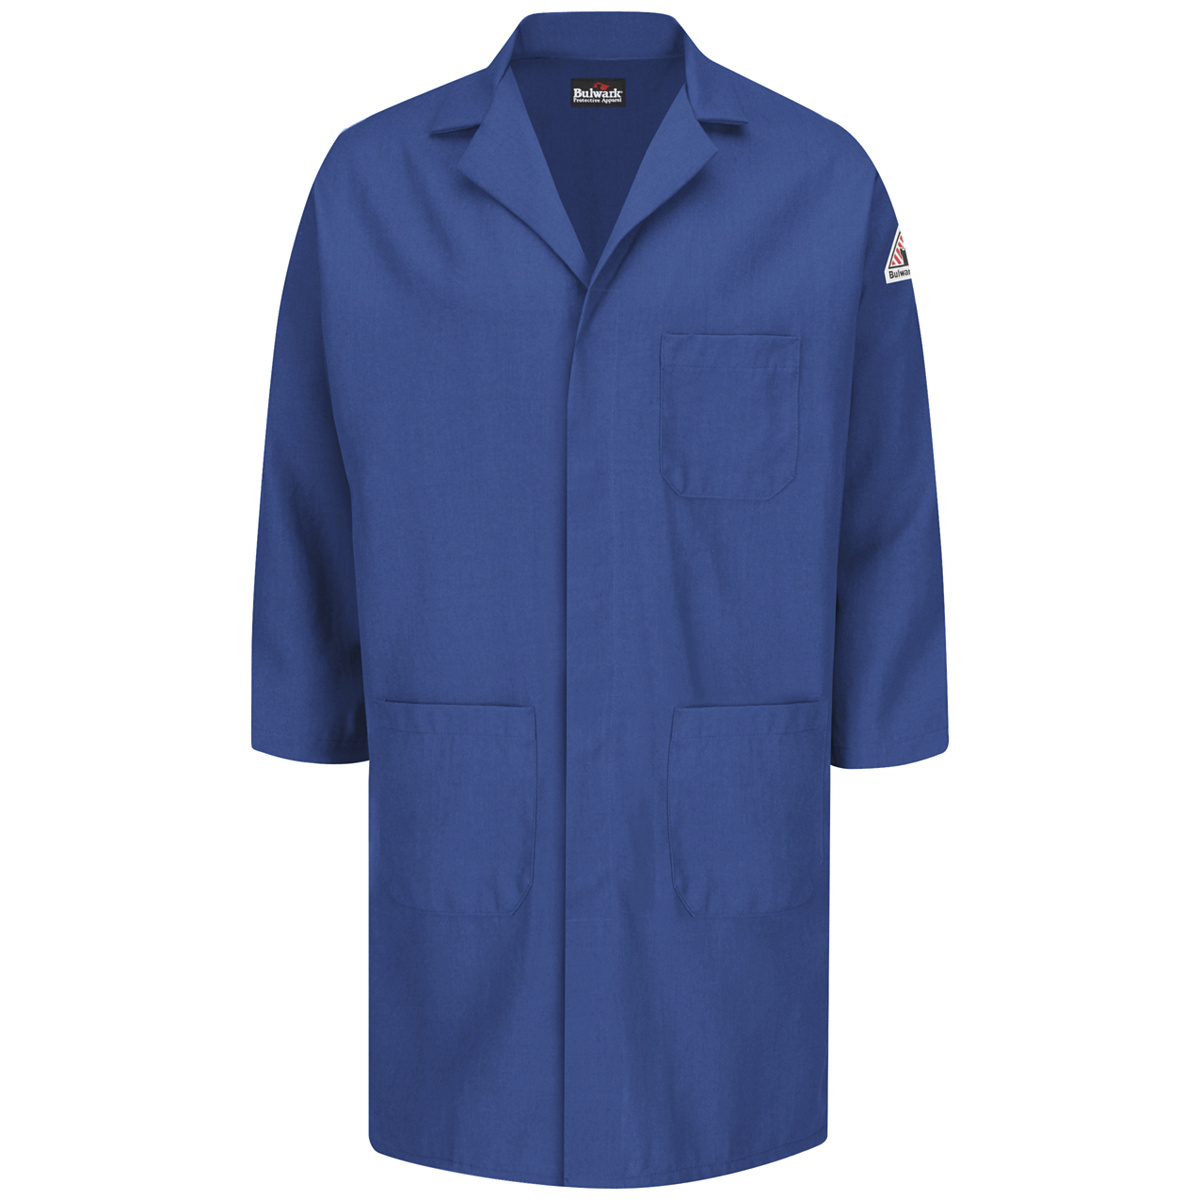 Bulwark® 2X Regular Royal Blue Nomex® IIIA/Nomex® Aramid/Kevlar® Aramid Flame Resistant Lab Coat With Snap Front Closure